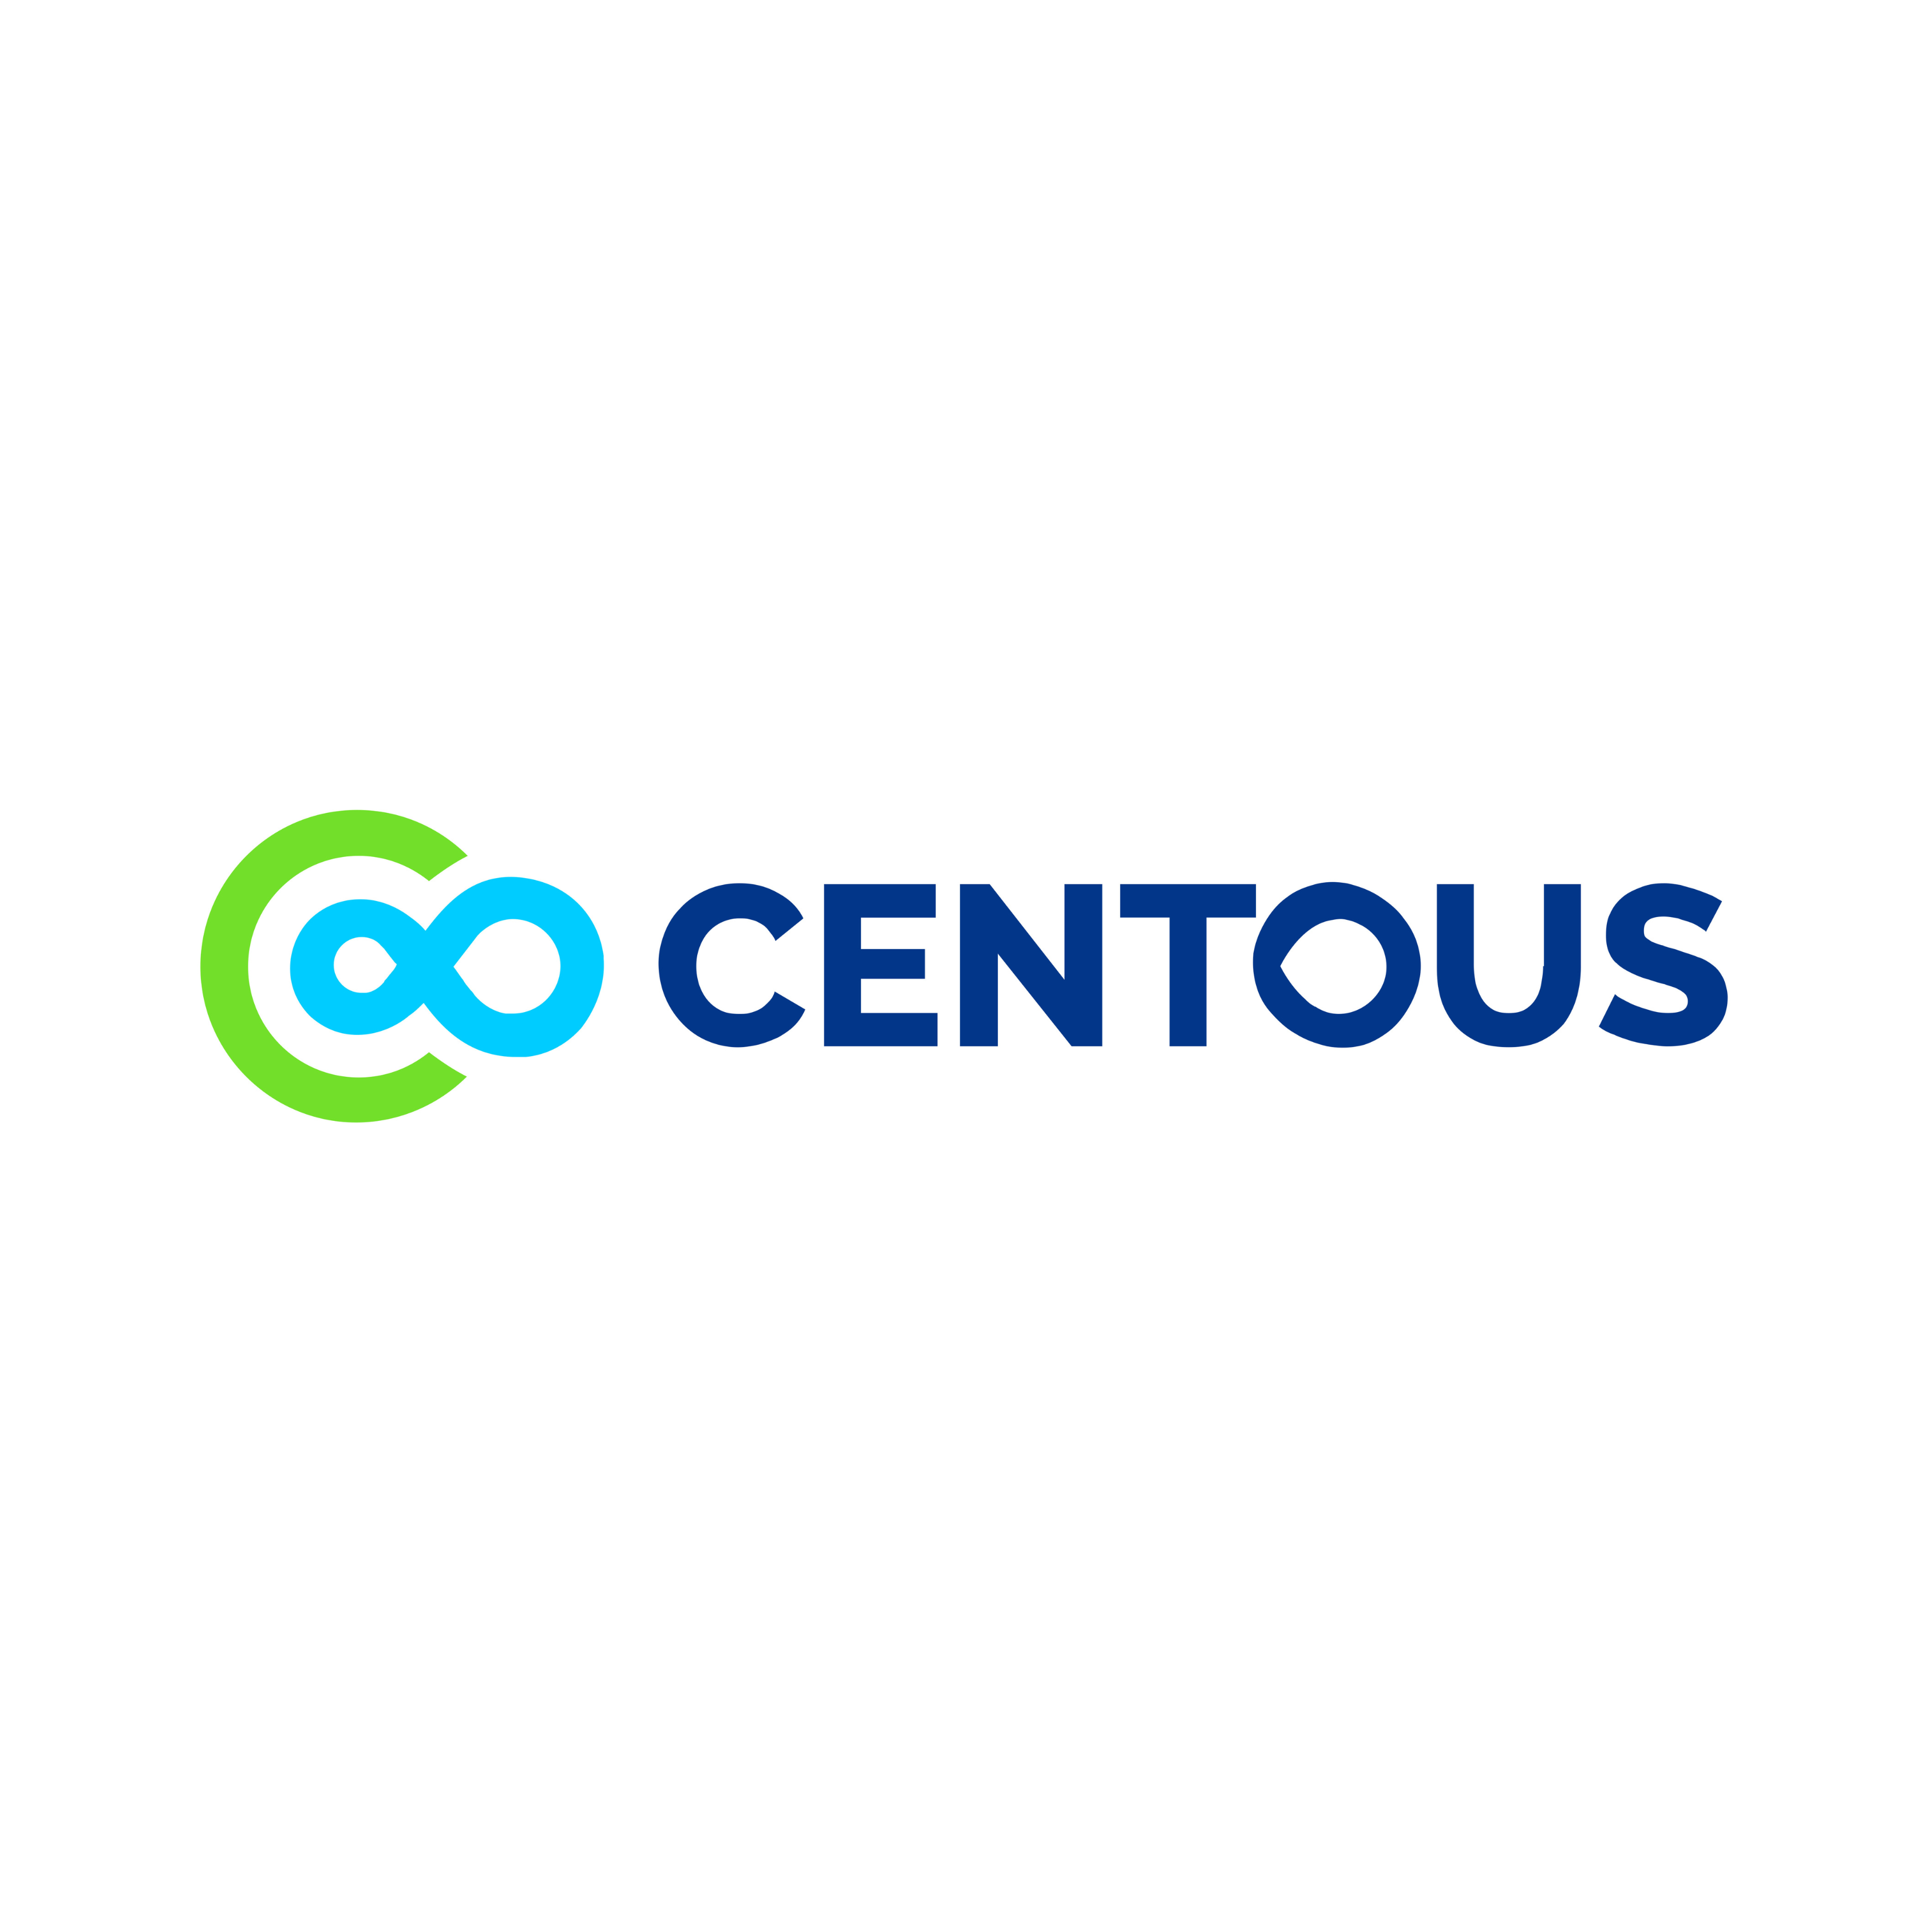 Centous Solutions|IT Services|Professional Services